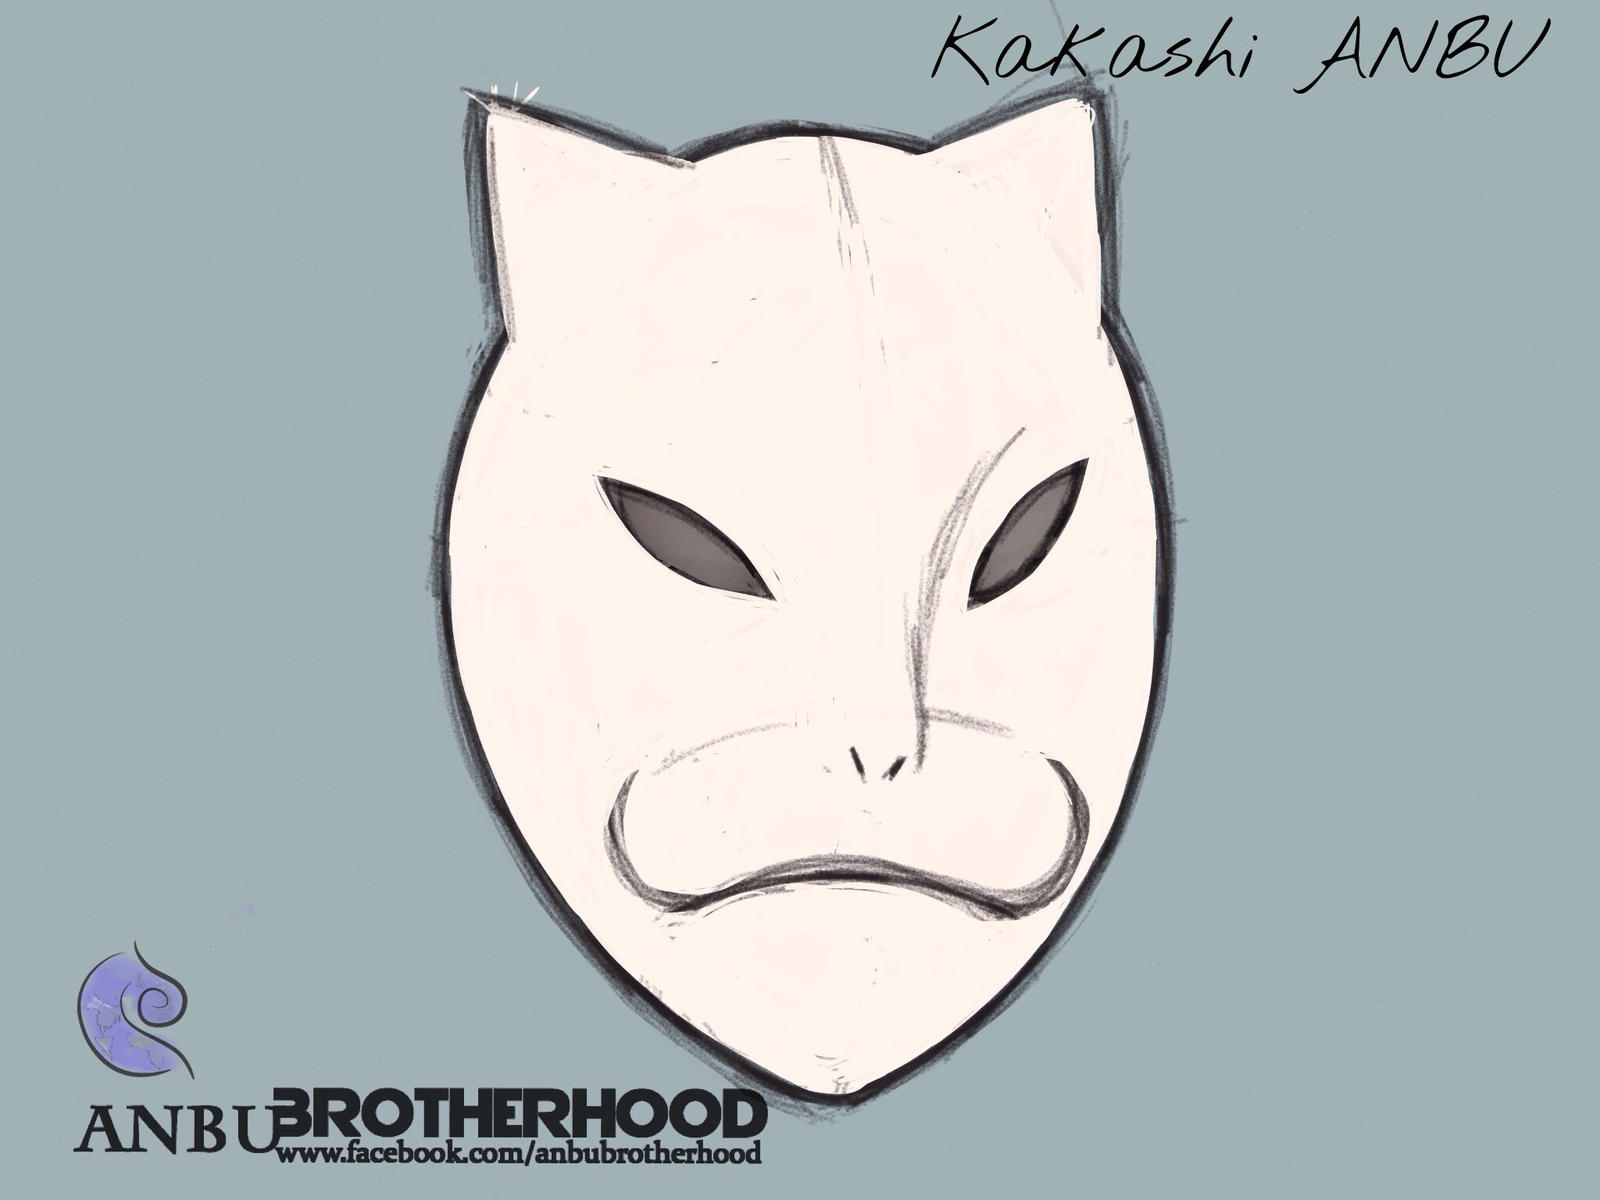 Kakashi ANBU Mask Template by logikhandtheory Kakashi ANBU Mask Template by logikhandtheory - kakashi_anbu_mask_template_by_logikhandtheory-d7lyqhb